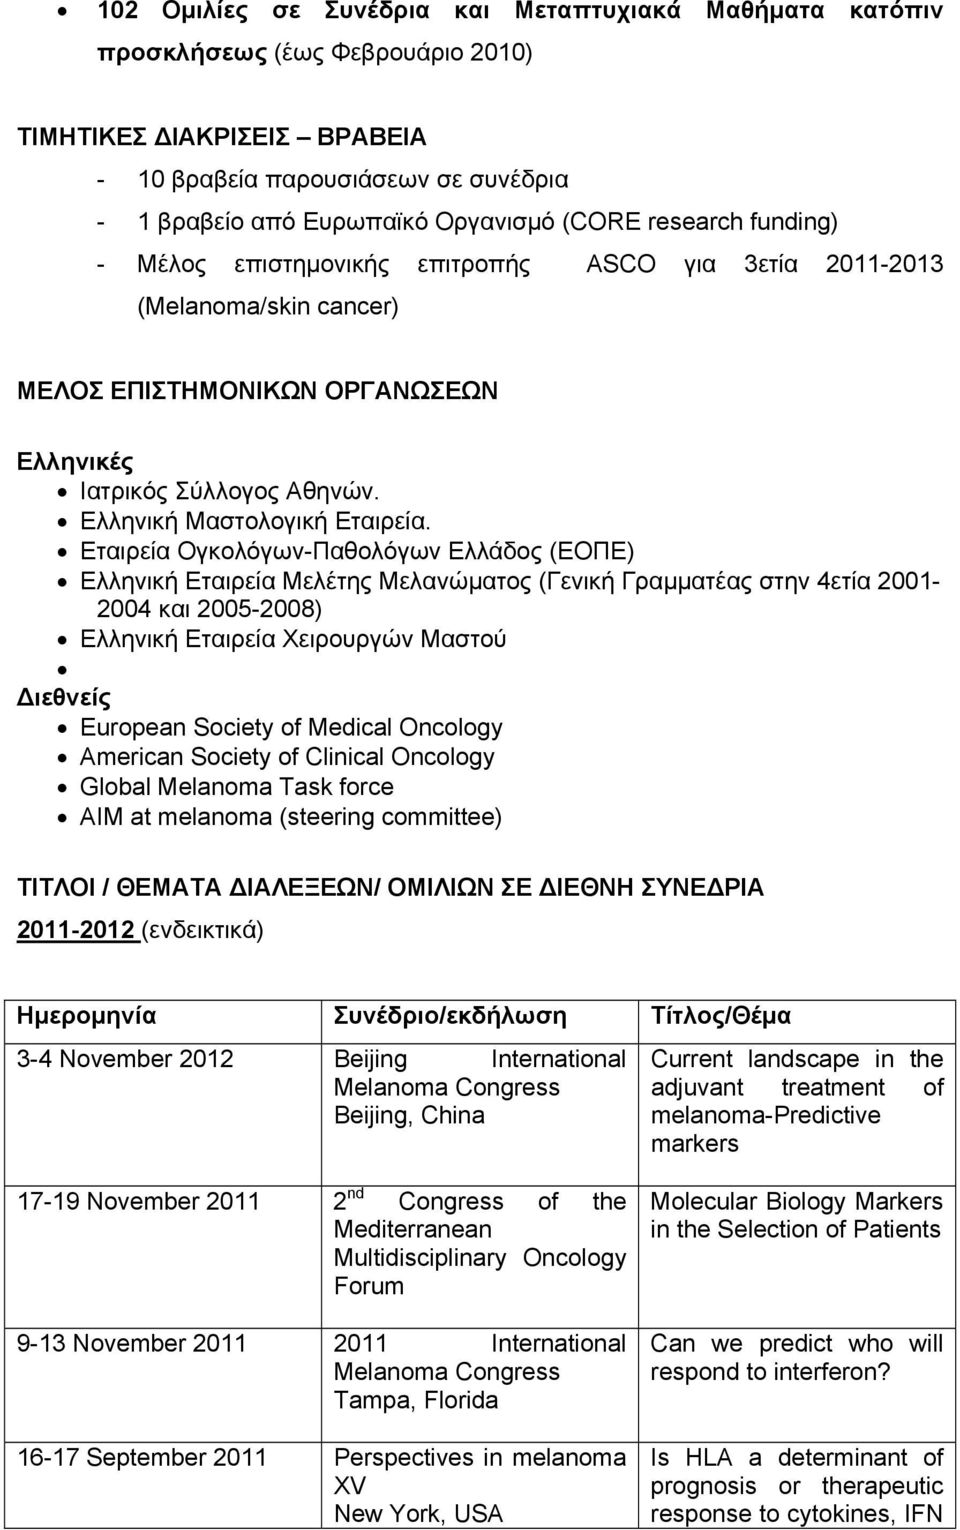 Εταιρεία Ογκολόγων-Παθολόγων Ελλάδος (ΕΟΠΕ) Ελληνική Εταιρεία Μελέτης Μελανώματος (Γενική Γραμματέας στην 4ετία 2001-2004 και 2005-2008) Ελληνική Εταιρεία Χειρουργών Μαστού ιεθνείς European Society